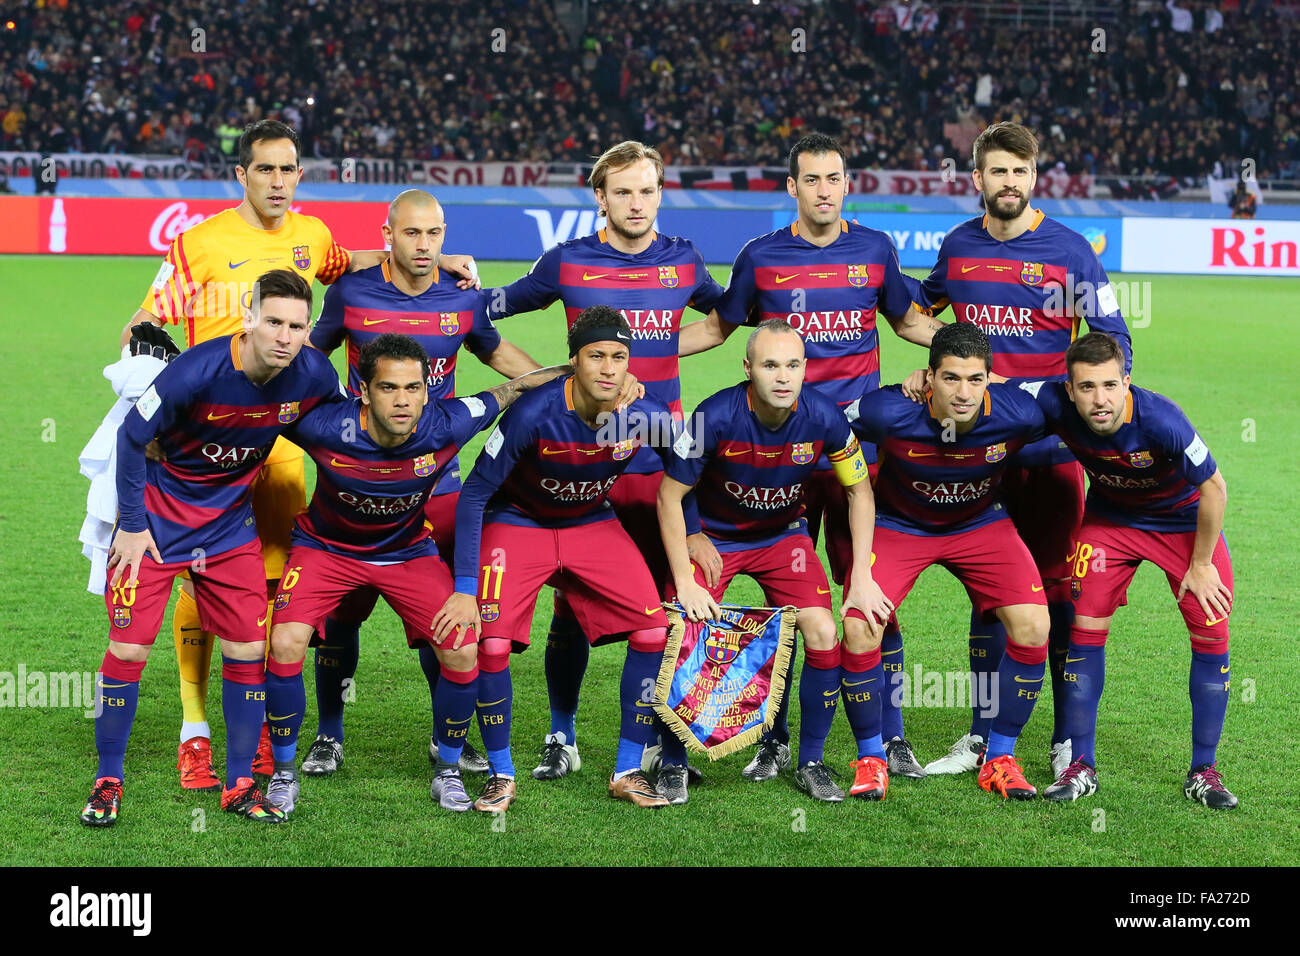 Squadra Di Barcellona Immagini e Fotos Stock - Alamy